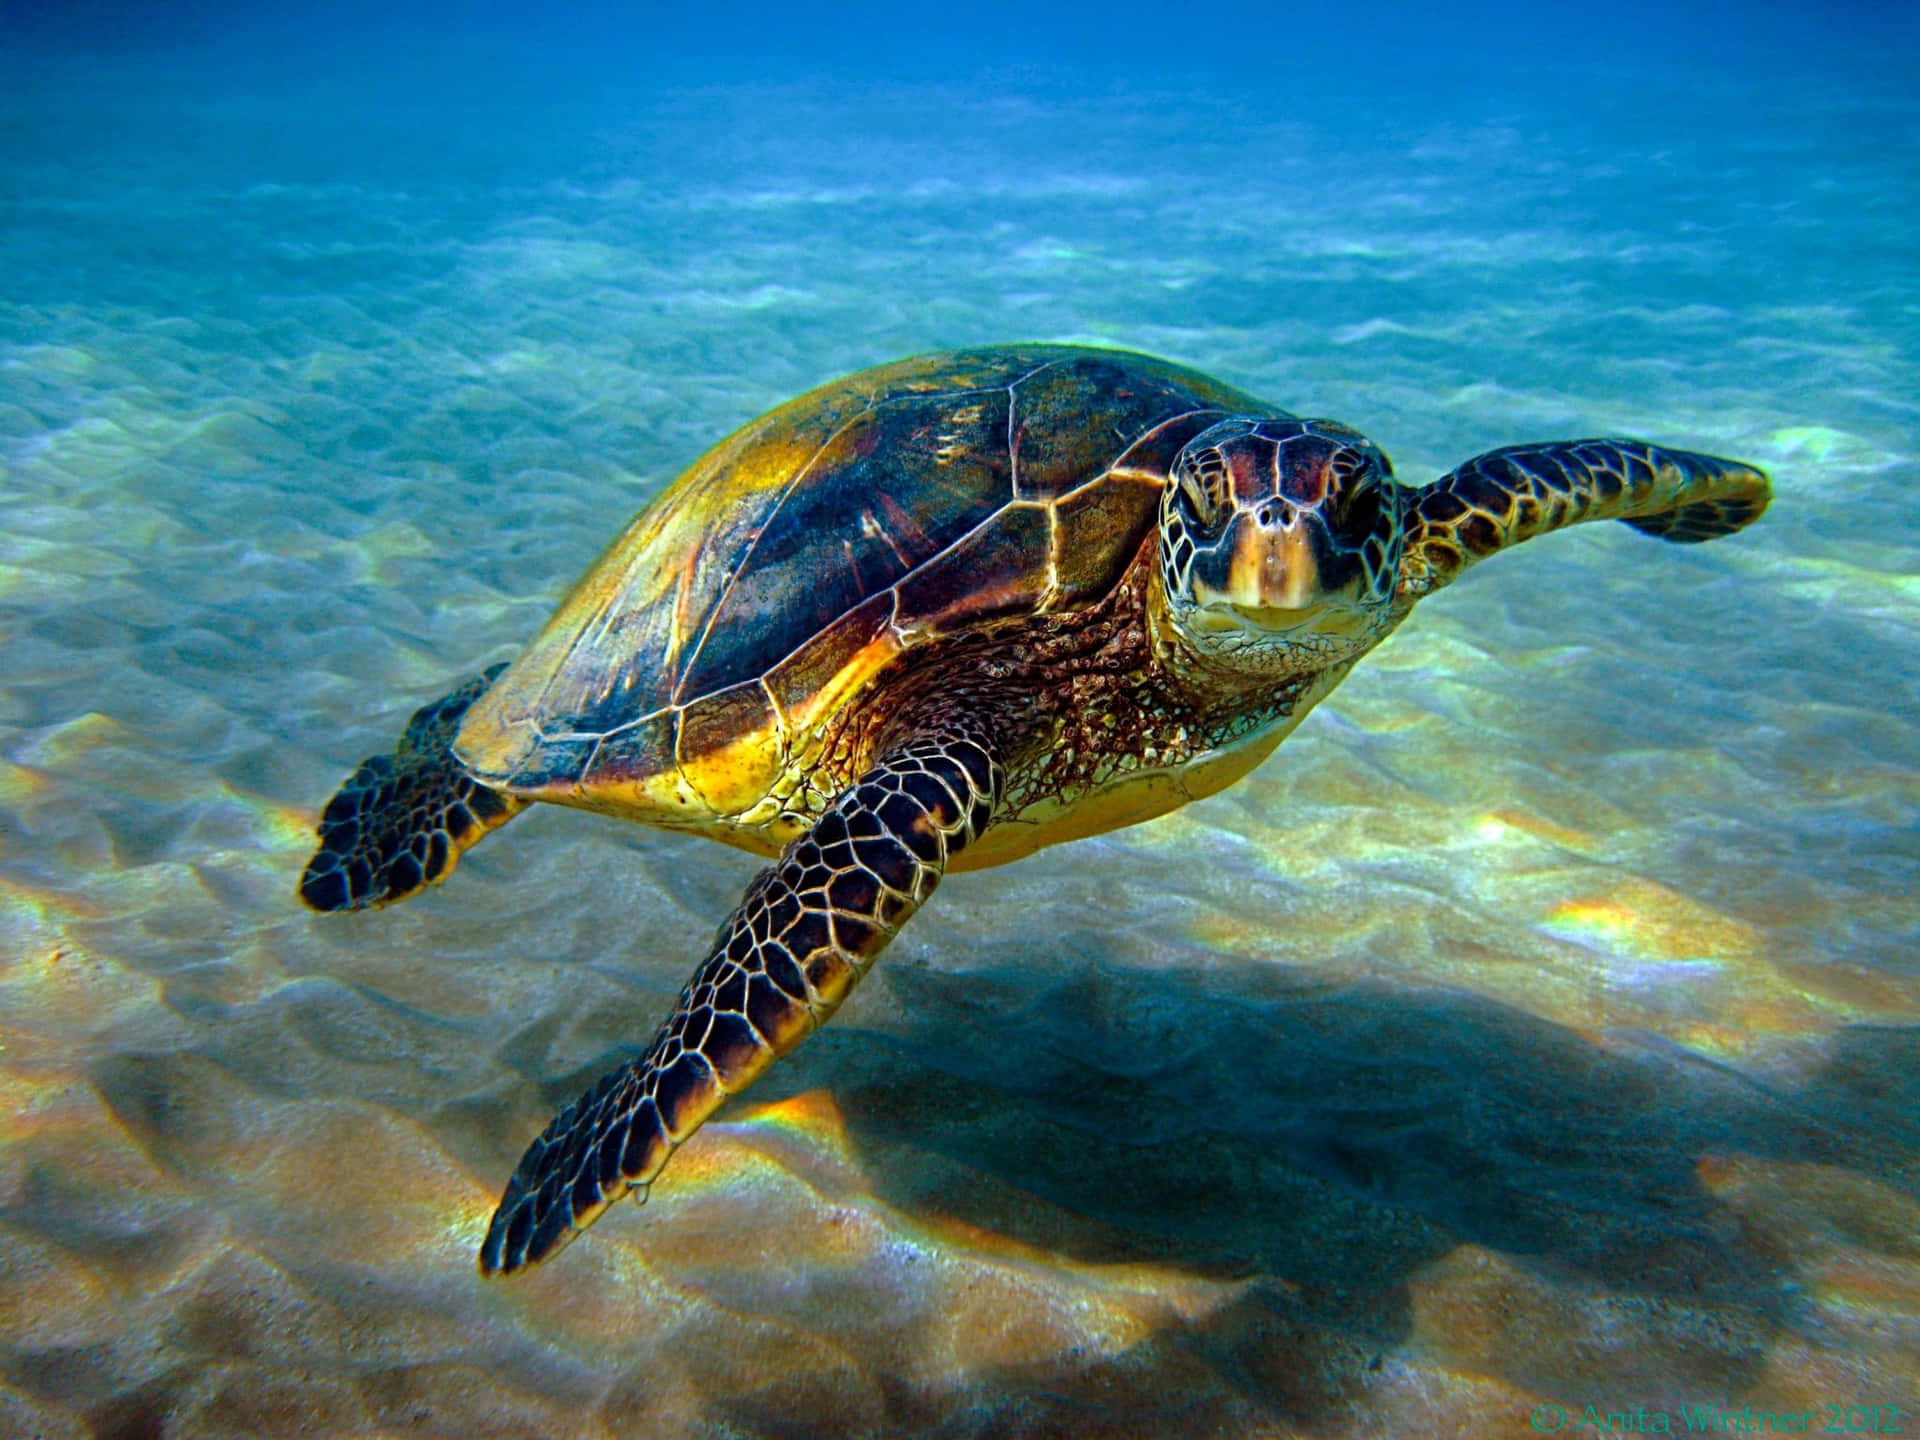 Enfridfullt Simmande Havssköldpadda I De Lugna Och Klara Vattnen I Karibien.